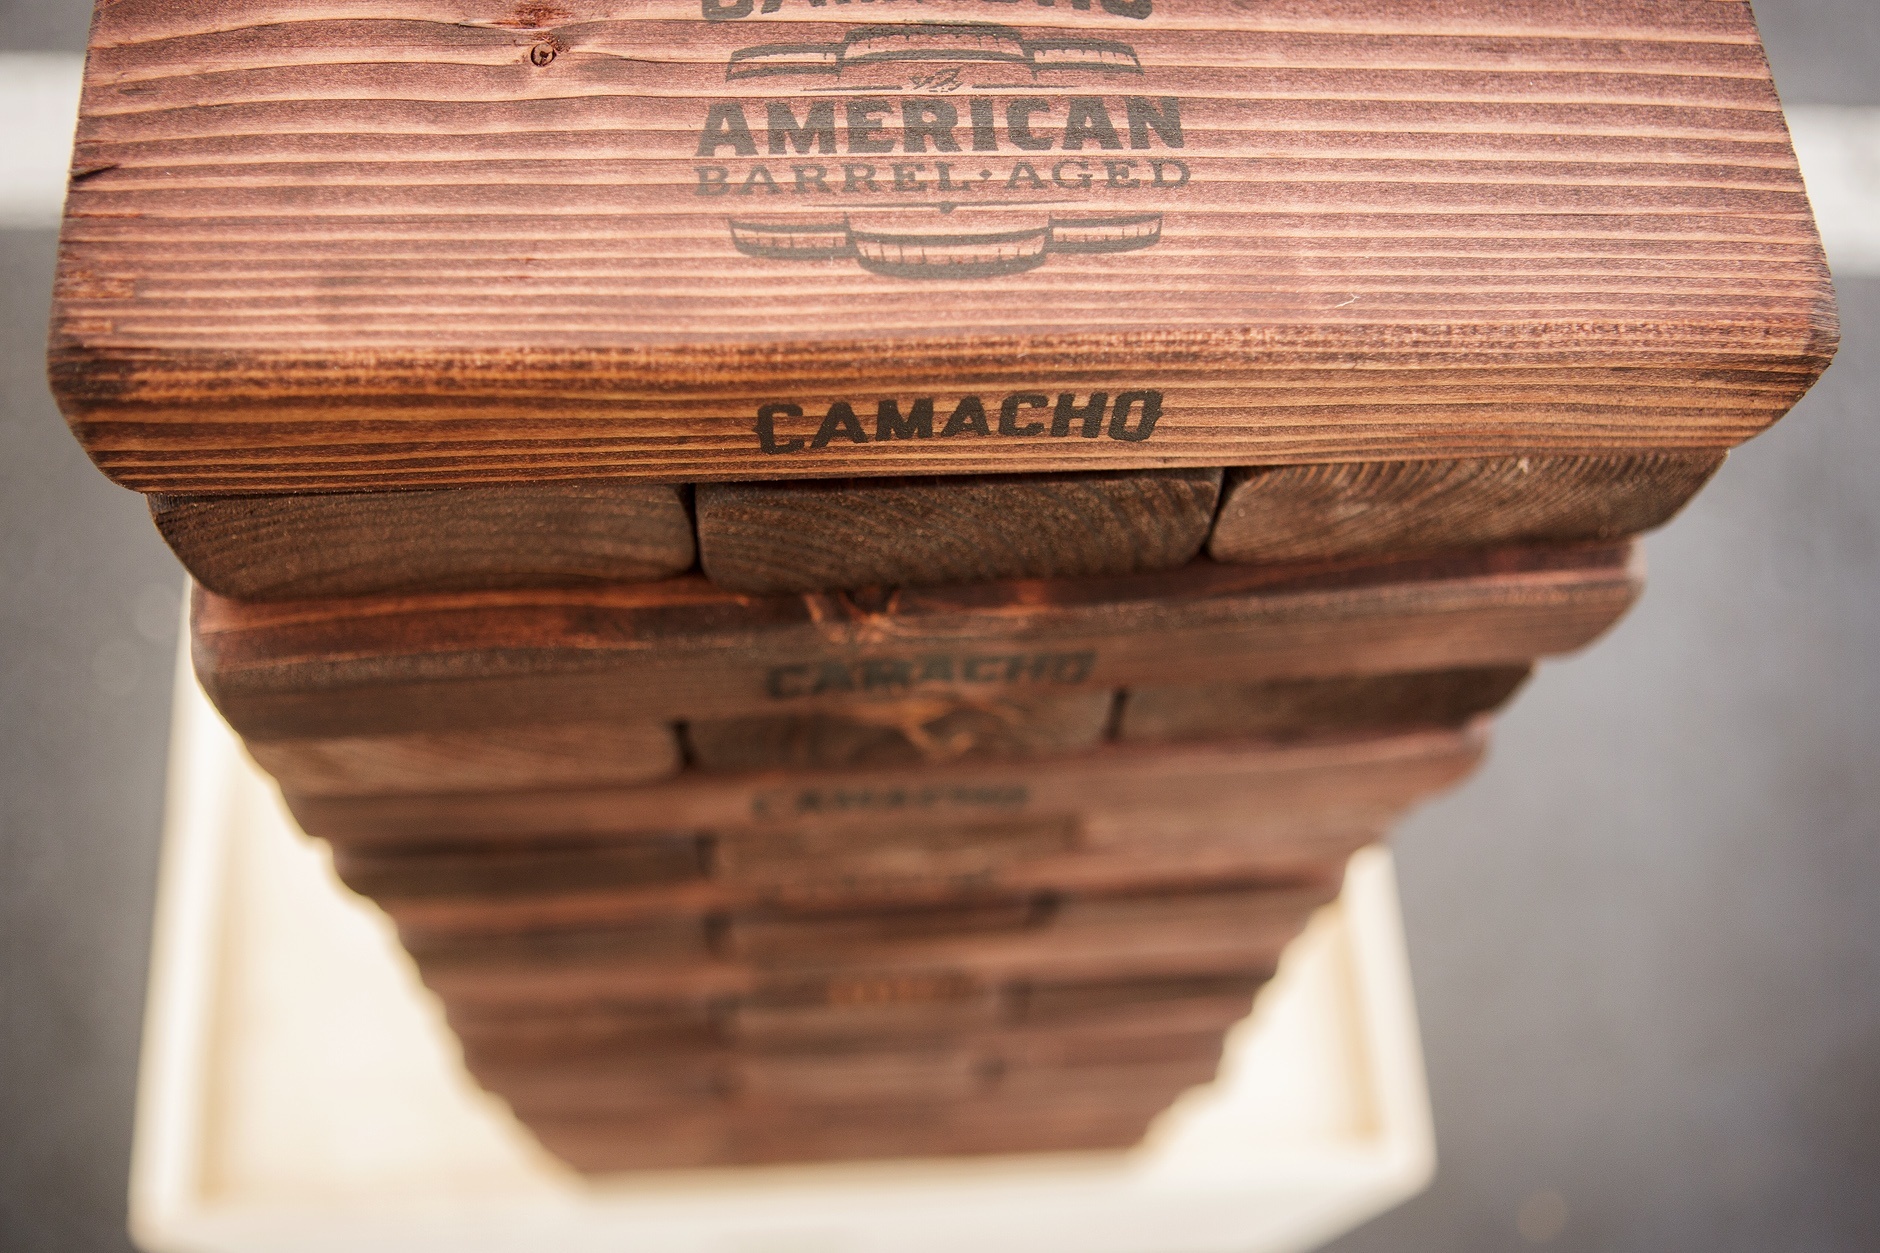 Camacho American Barrel-Aged Event 5